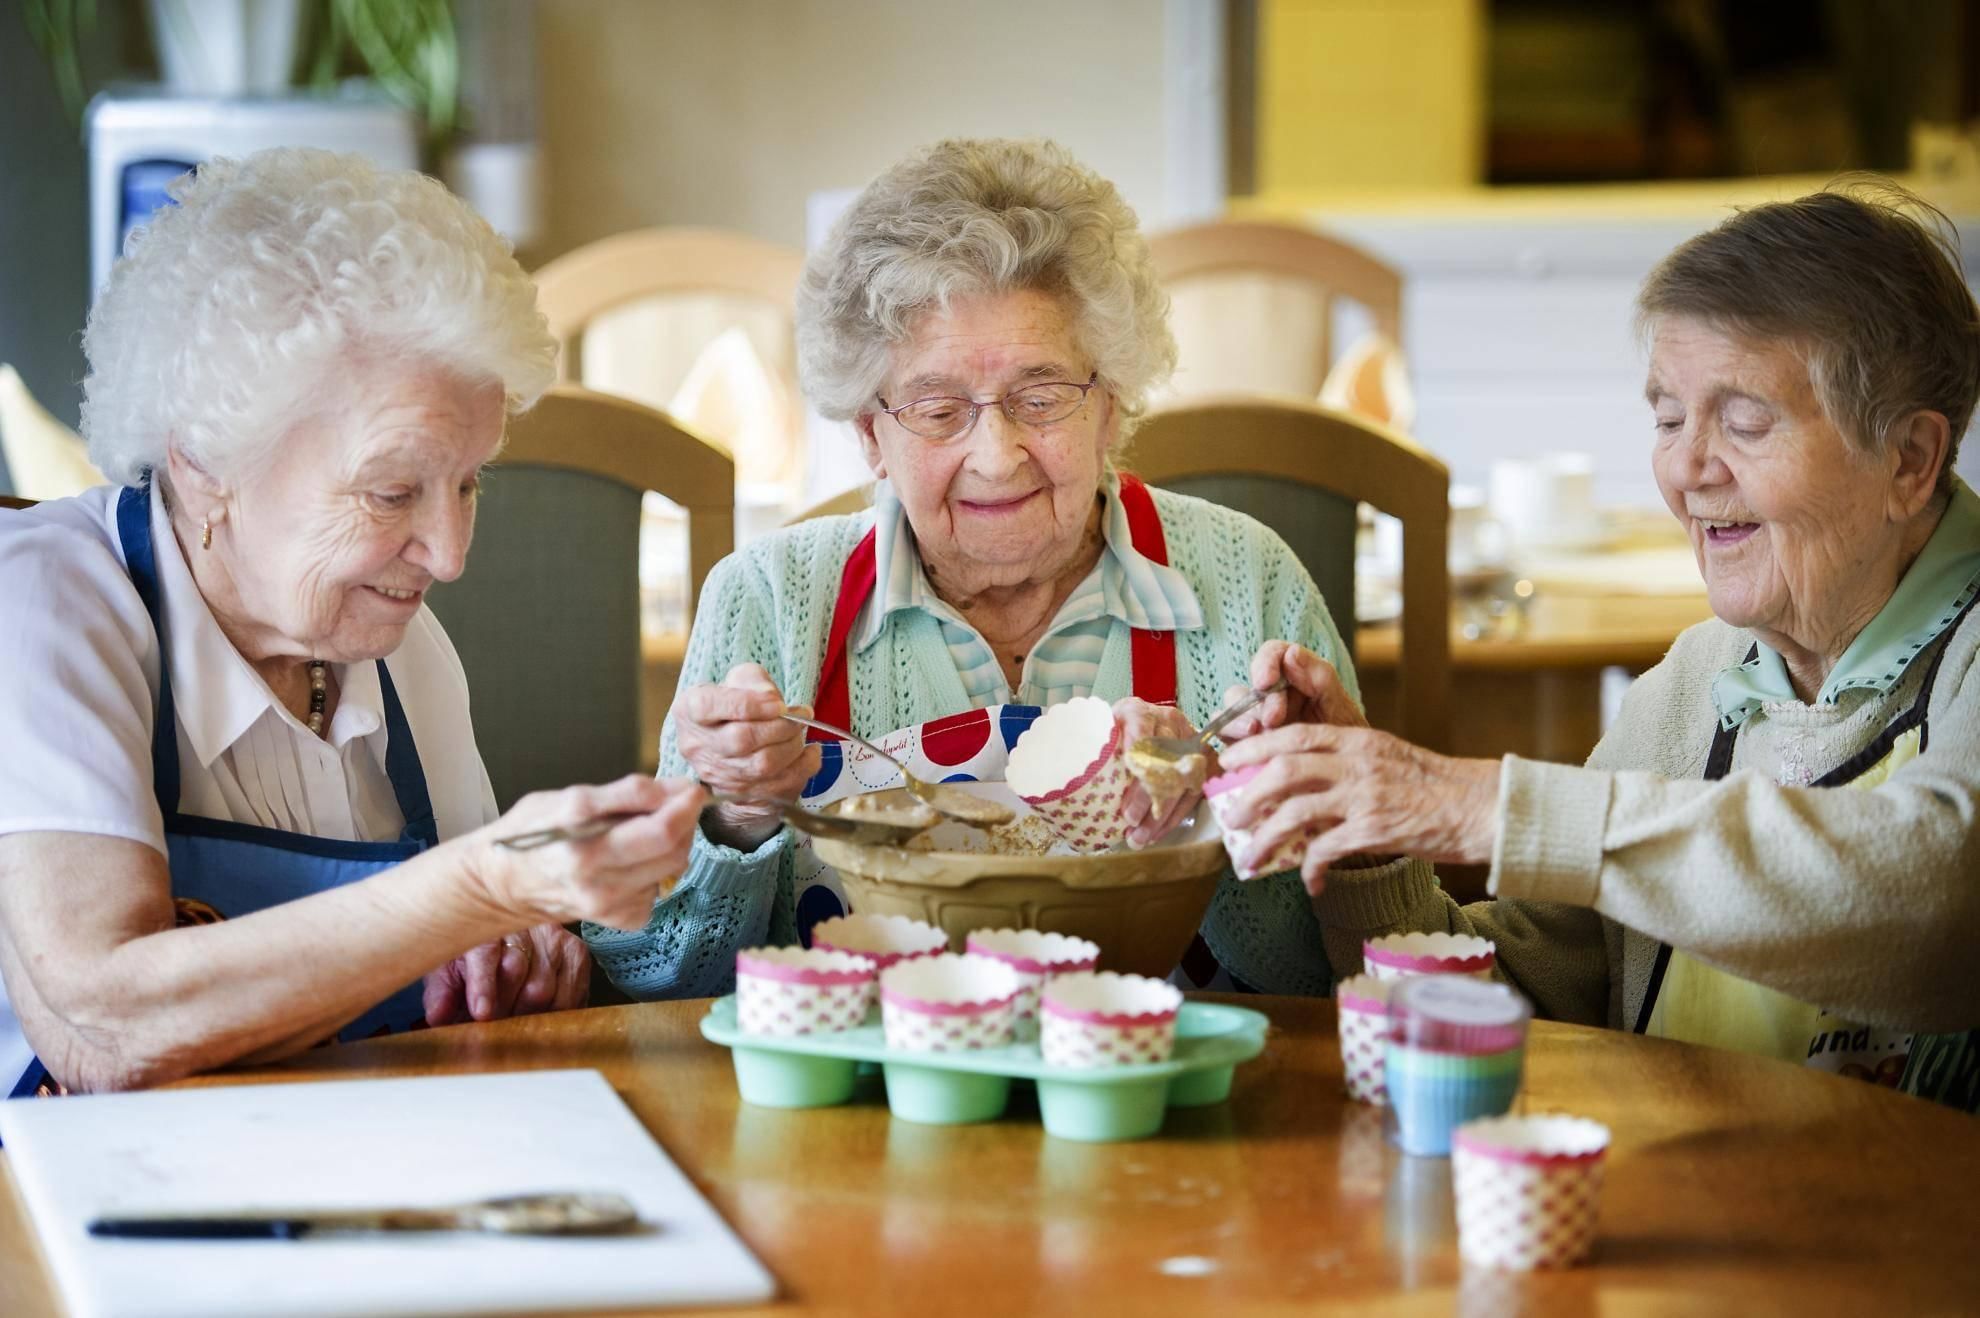 Новое работа для пенсионера. Кружки рукоделия для пенсионеров. Рукоделие для пожилых. Творчество пожилых людей. Хобби для пожилых.